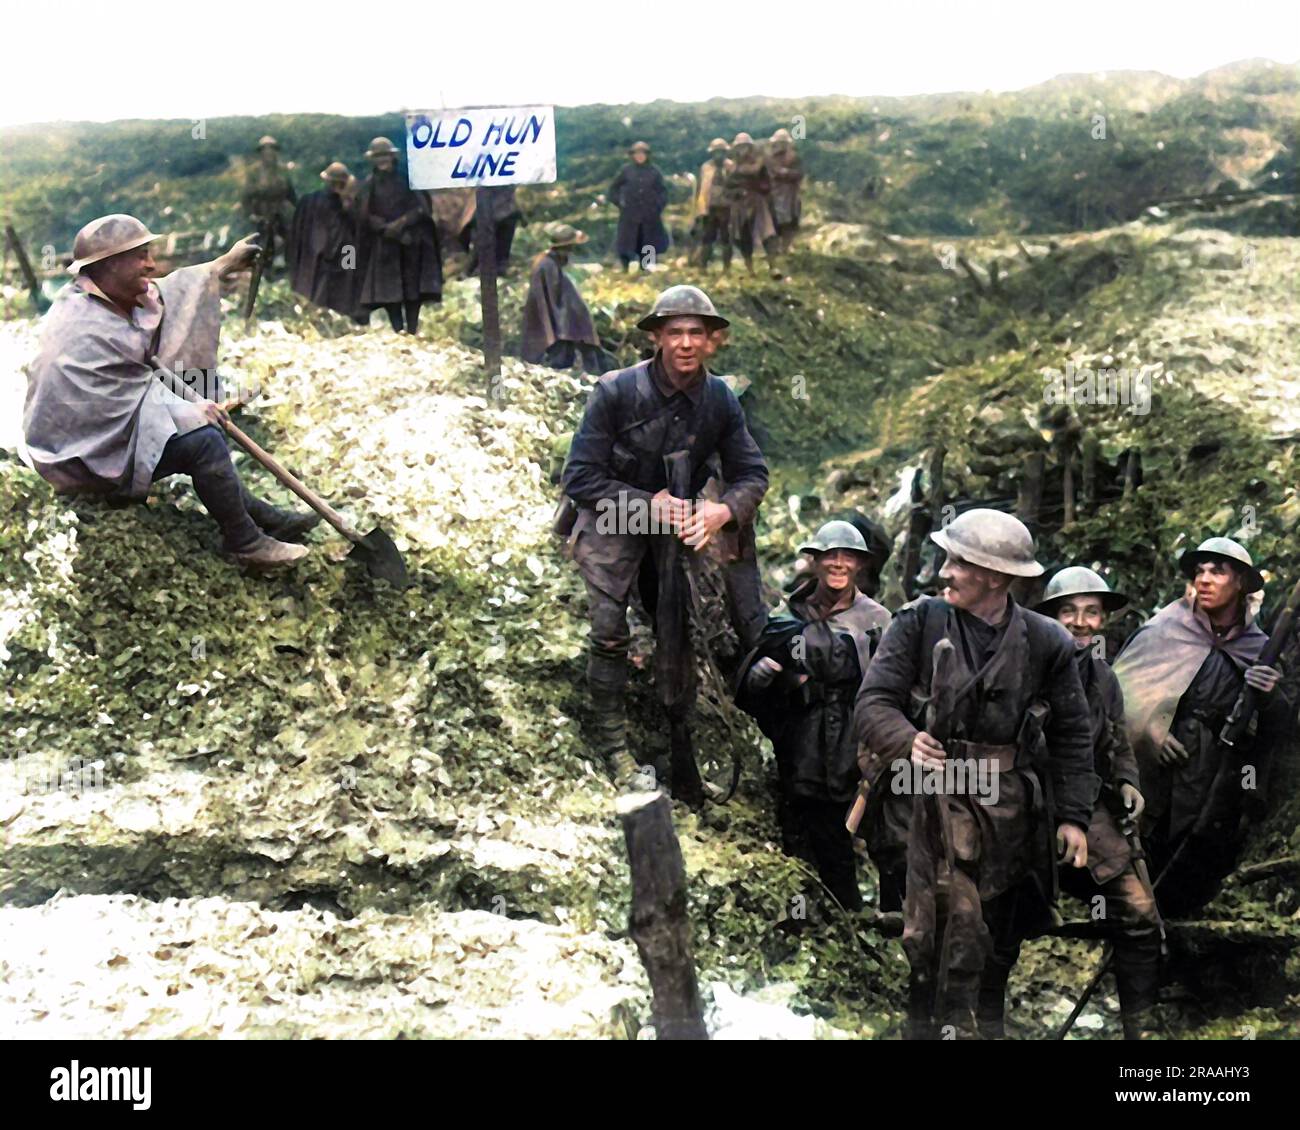 Britische Soldaten in einem neu gefangenen deutschen Graben während des Somme-Vormarsches an der Westfront in Frankreich im Ersten Weltkrieg. Auf dem Schild steht der alte Hunne Line. Datum: Ca. 1916 Stockfoto